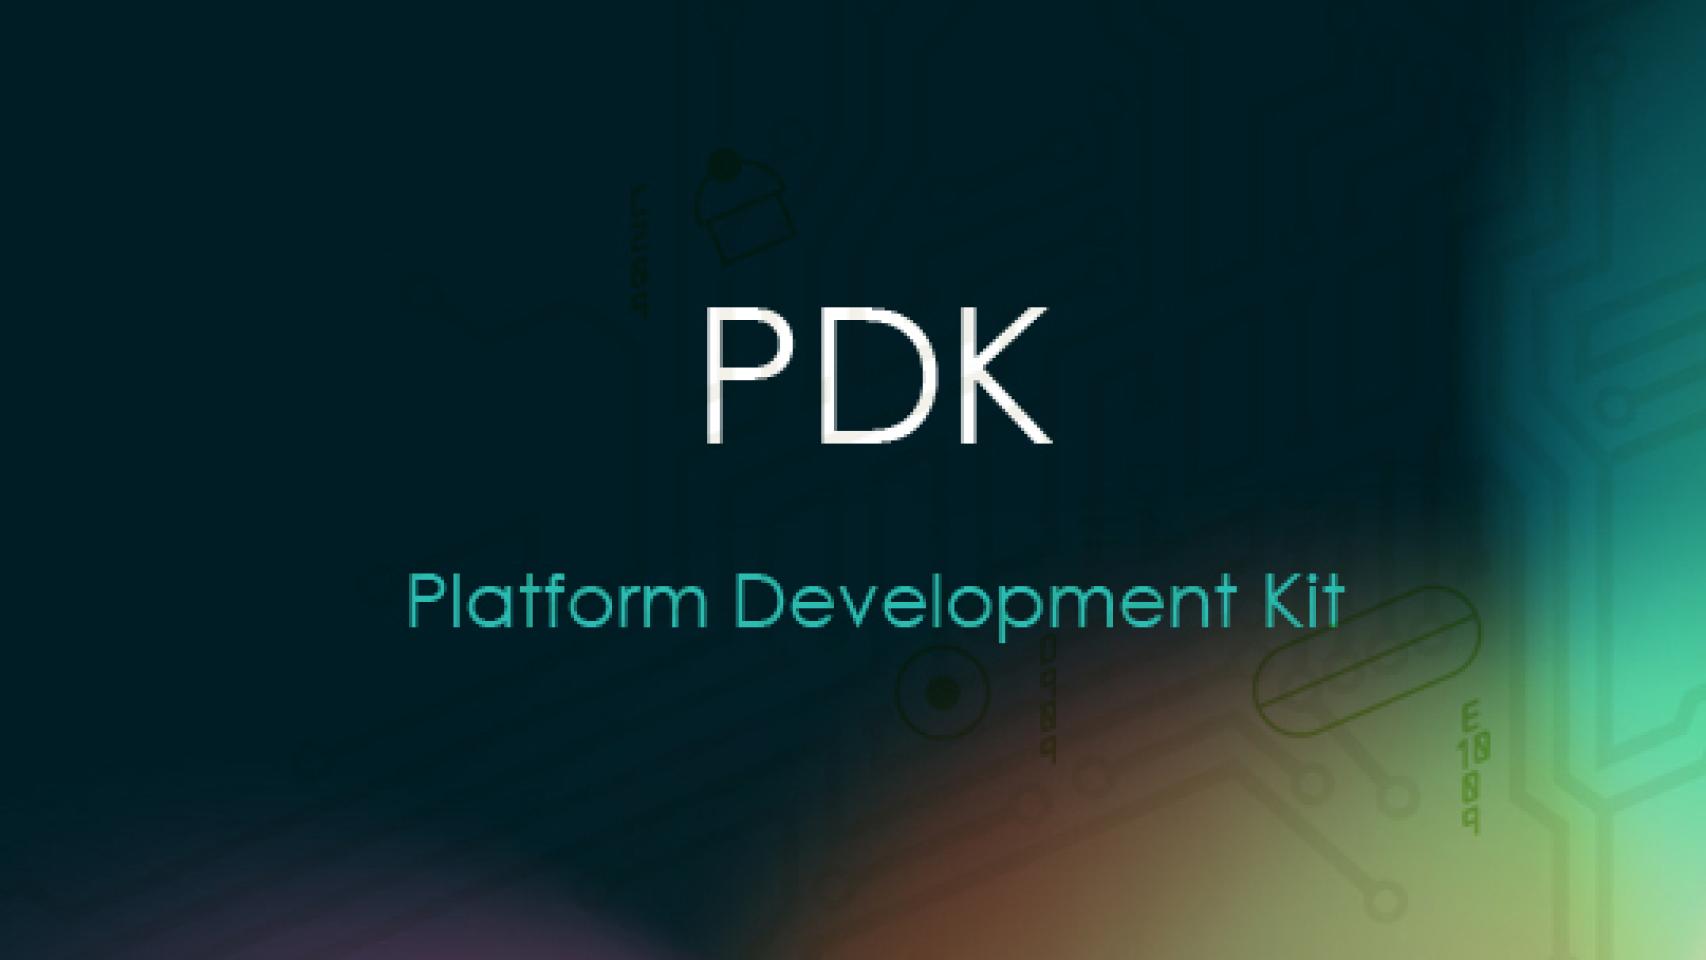 Google ya habría enviado el PDK de Android 4.2 a los fabricantes para que prueben y actualicen a la nueva versión